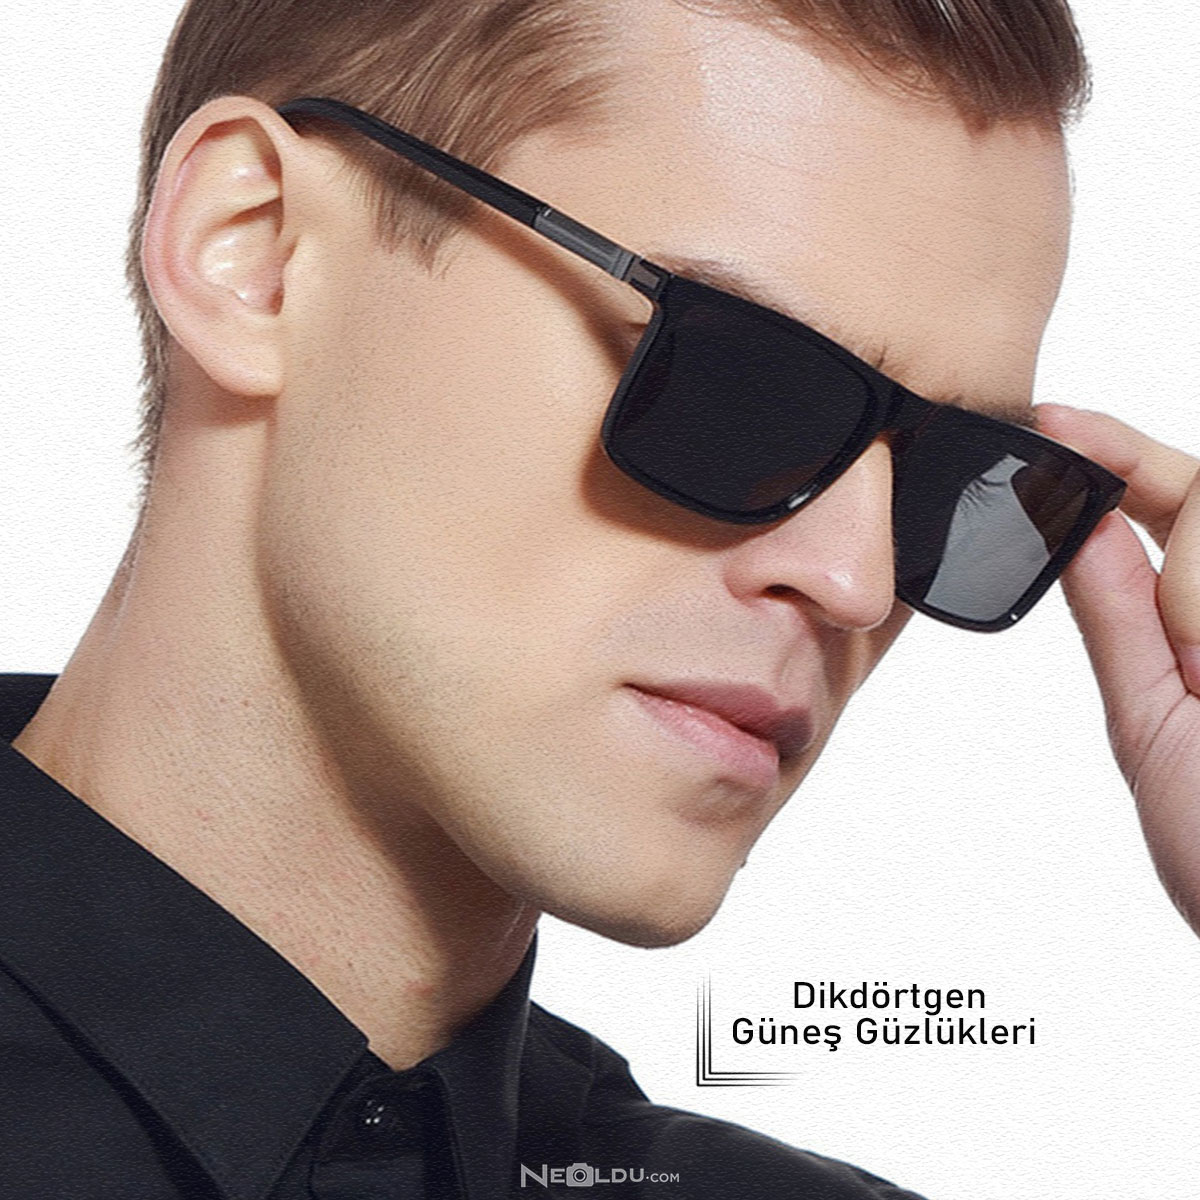 Купить солнцезащитные очки мужские оригинал